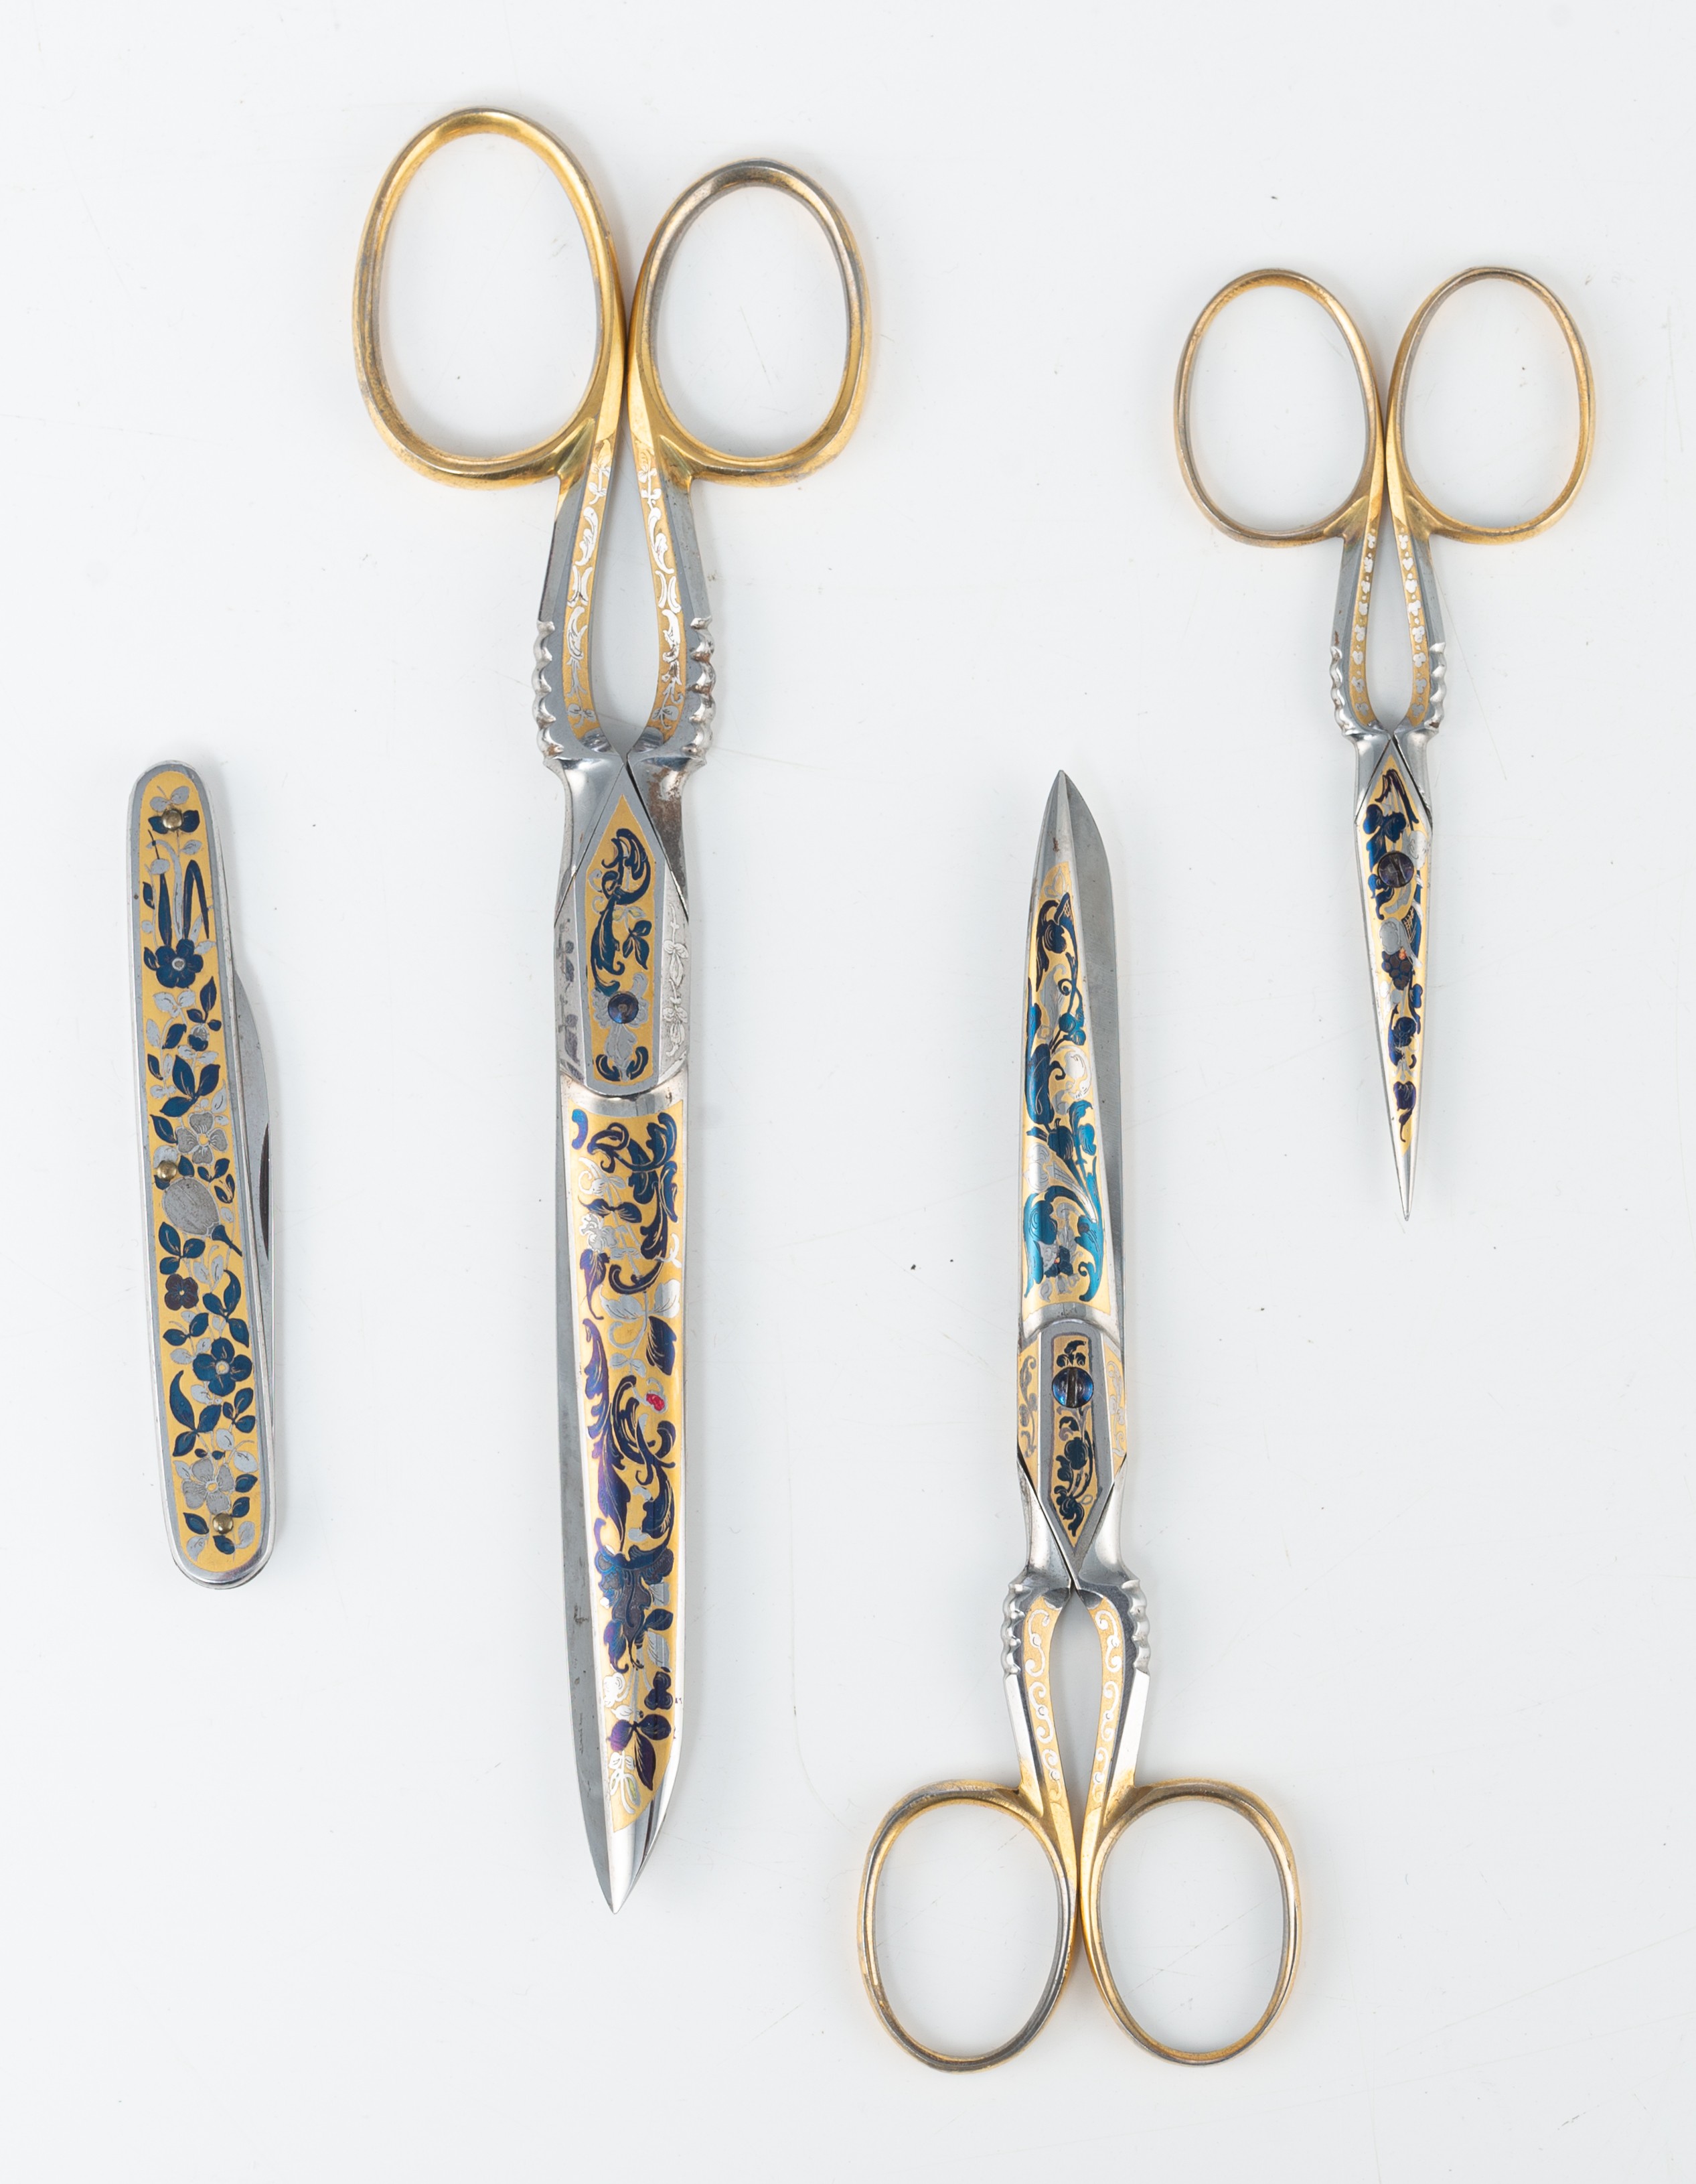 A set of floral damascening scissors and pocket knife, by 'Eskilstunamagasinet, Stockholm' - Image 8 of 9